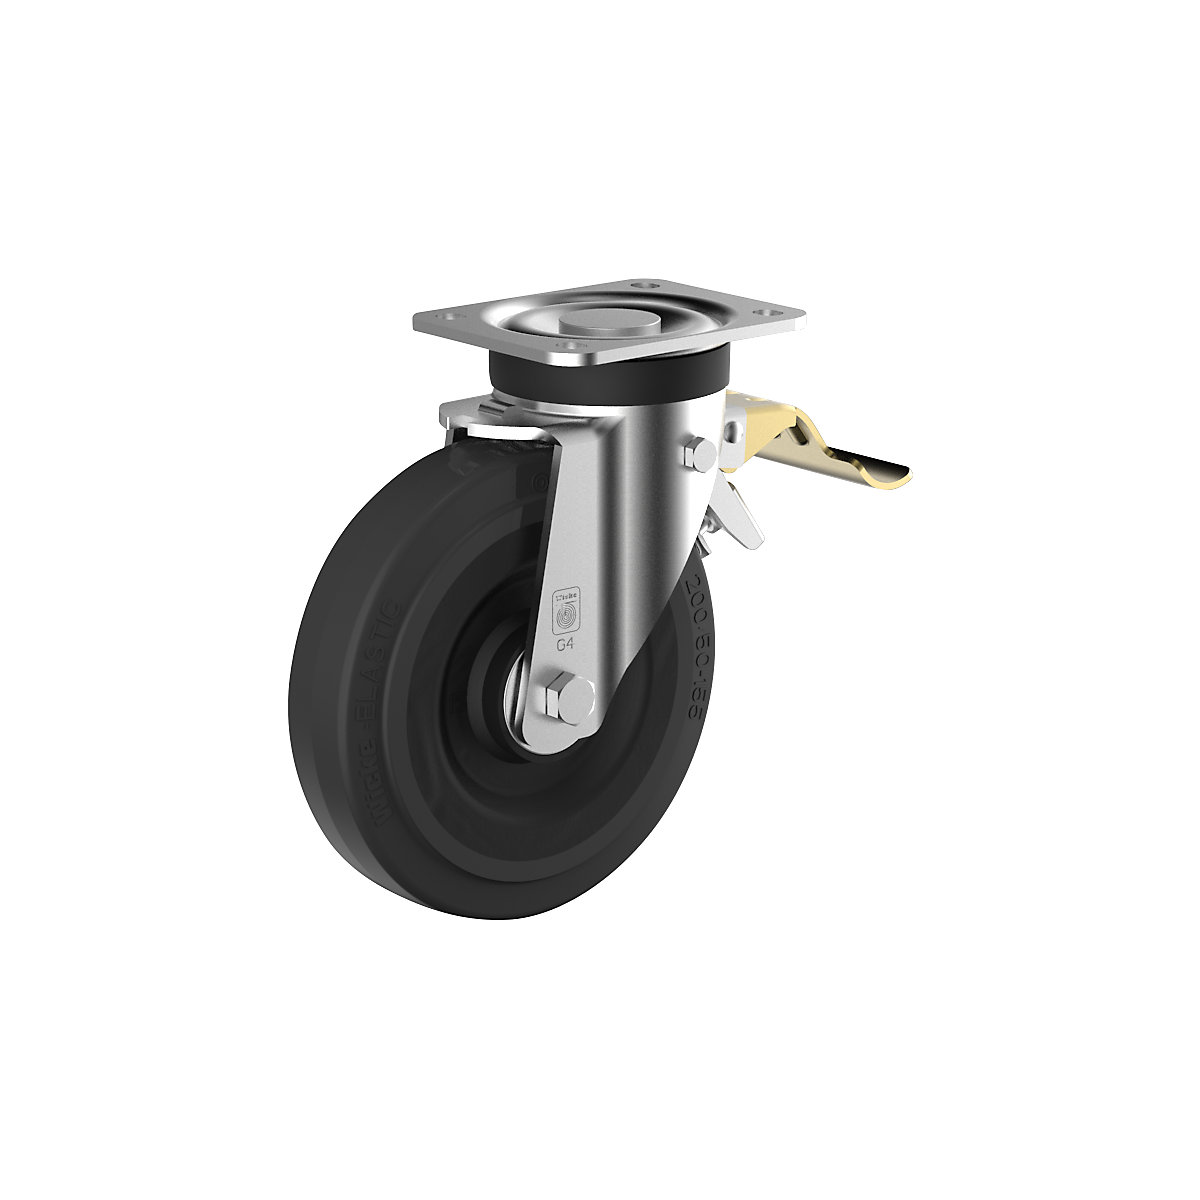 Rueda de caucho macizo elástico sobre llanta de acero – Wicke, Ø x anchura de rueda 250 x 60 mm, rueda de maniobra con freno doble-3